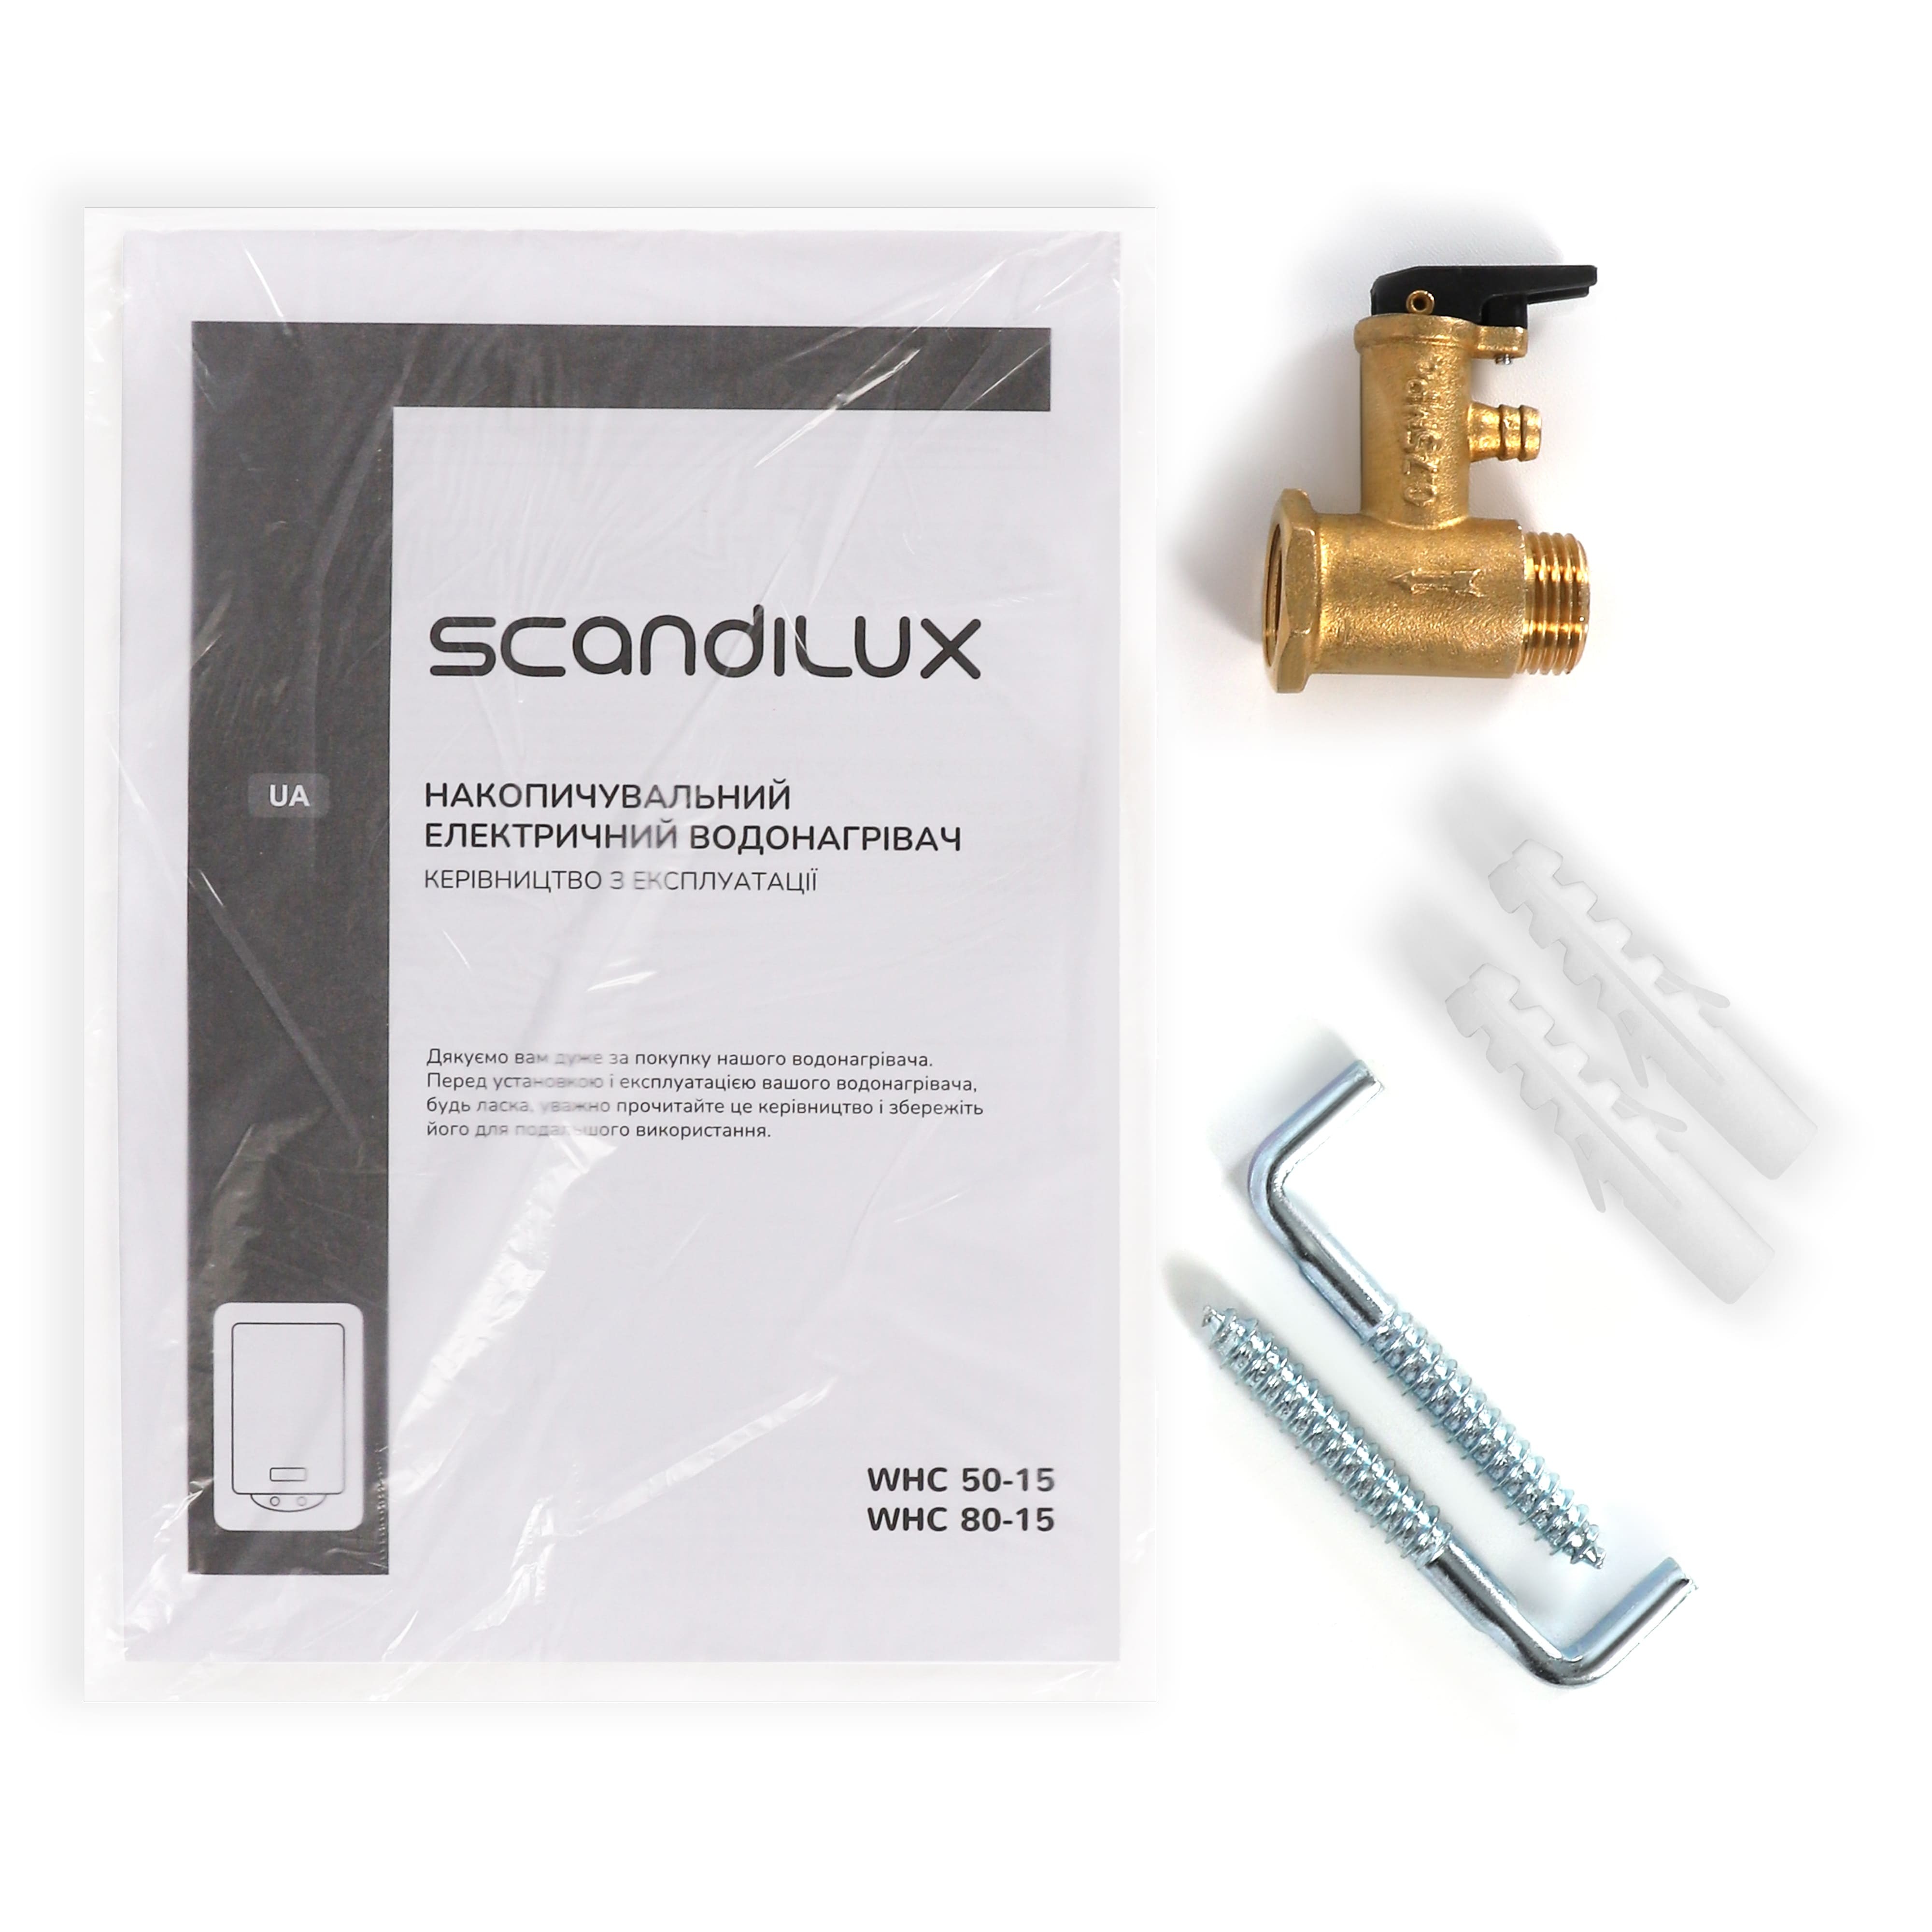 Водонагрівач Scandilux WHC 80-15 характеристики - фотографія 7